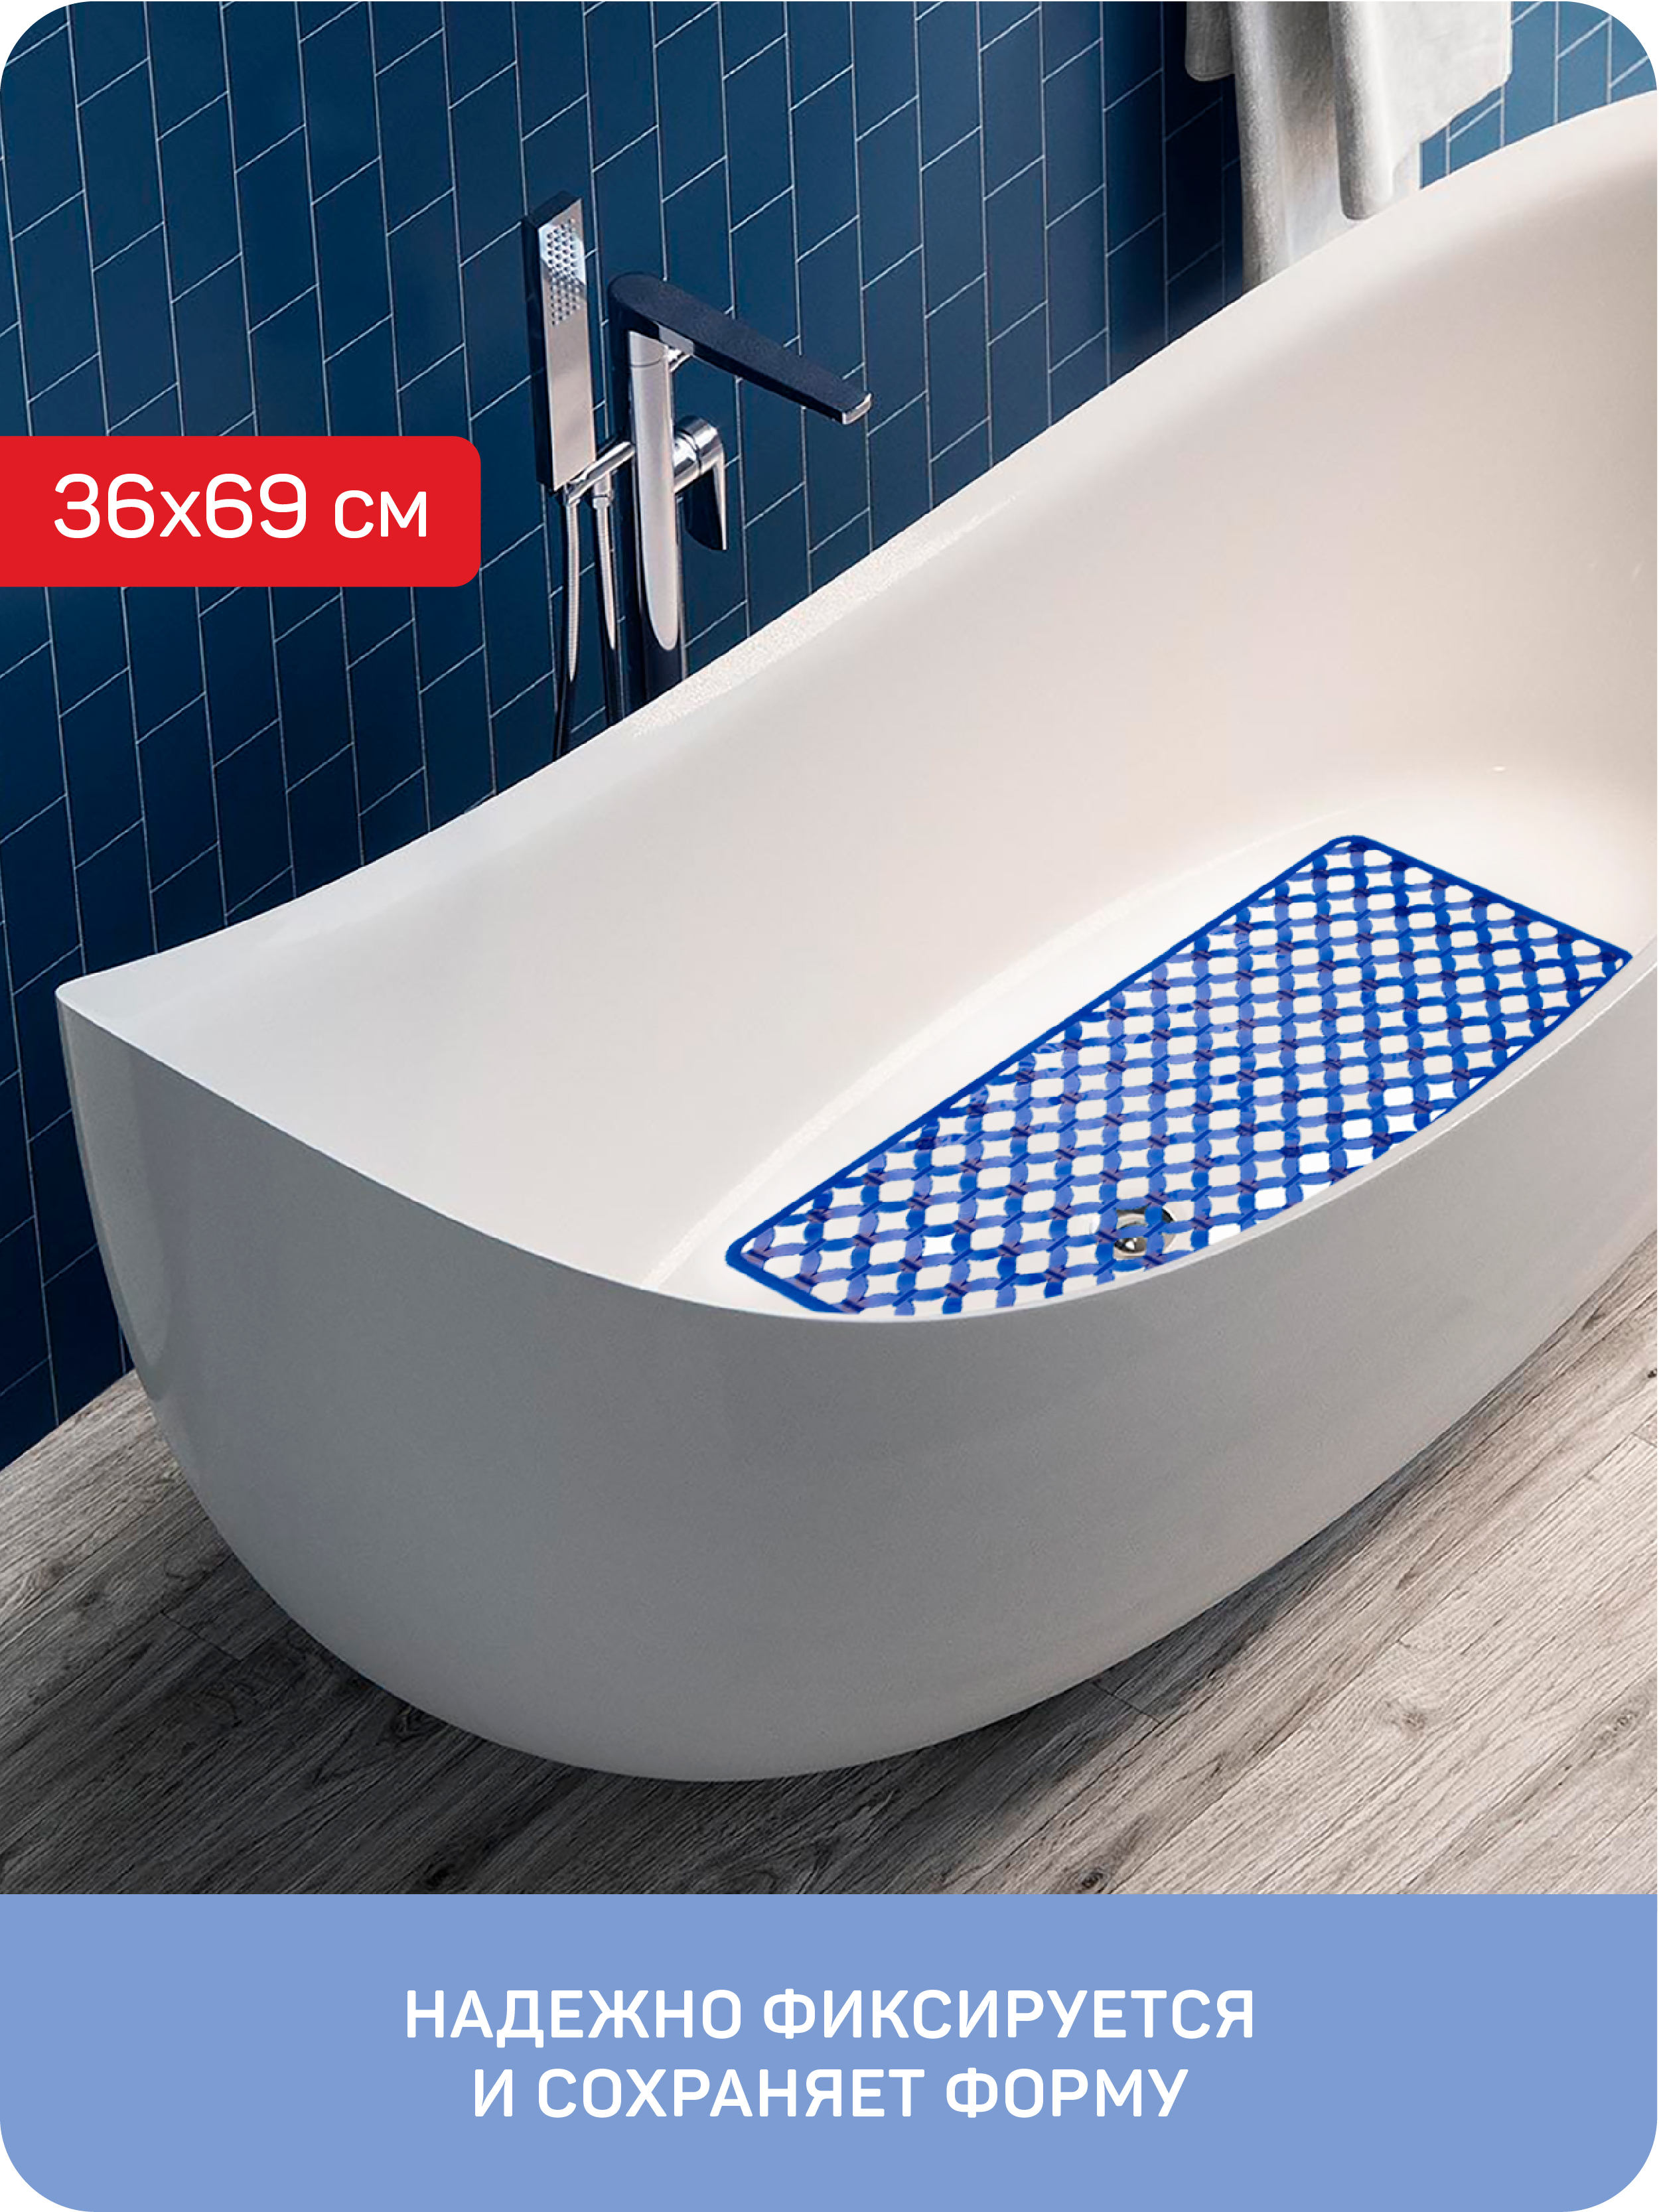 Коврик противоскользящий для ванны/душевой кабины Майорка, 36x69 см, синий